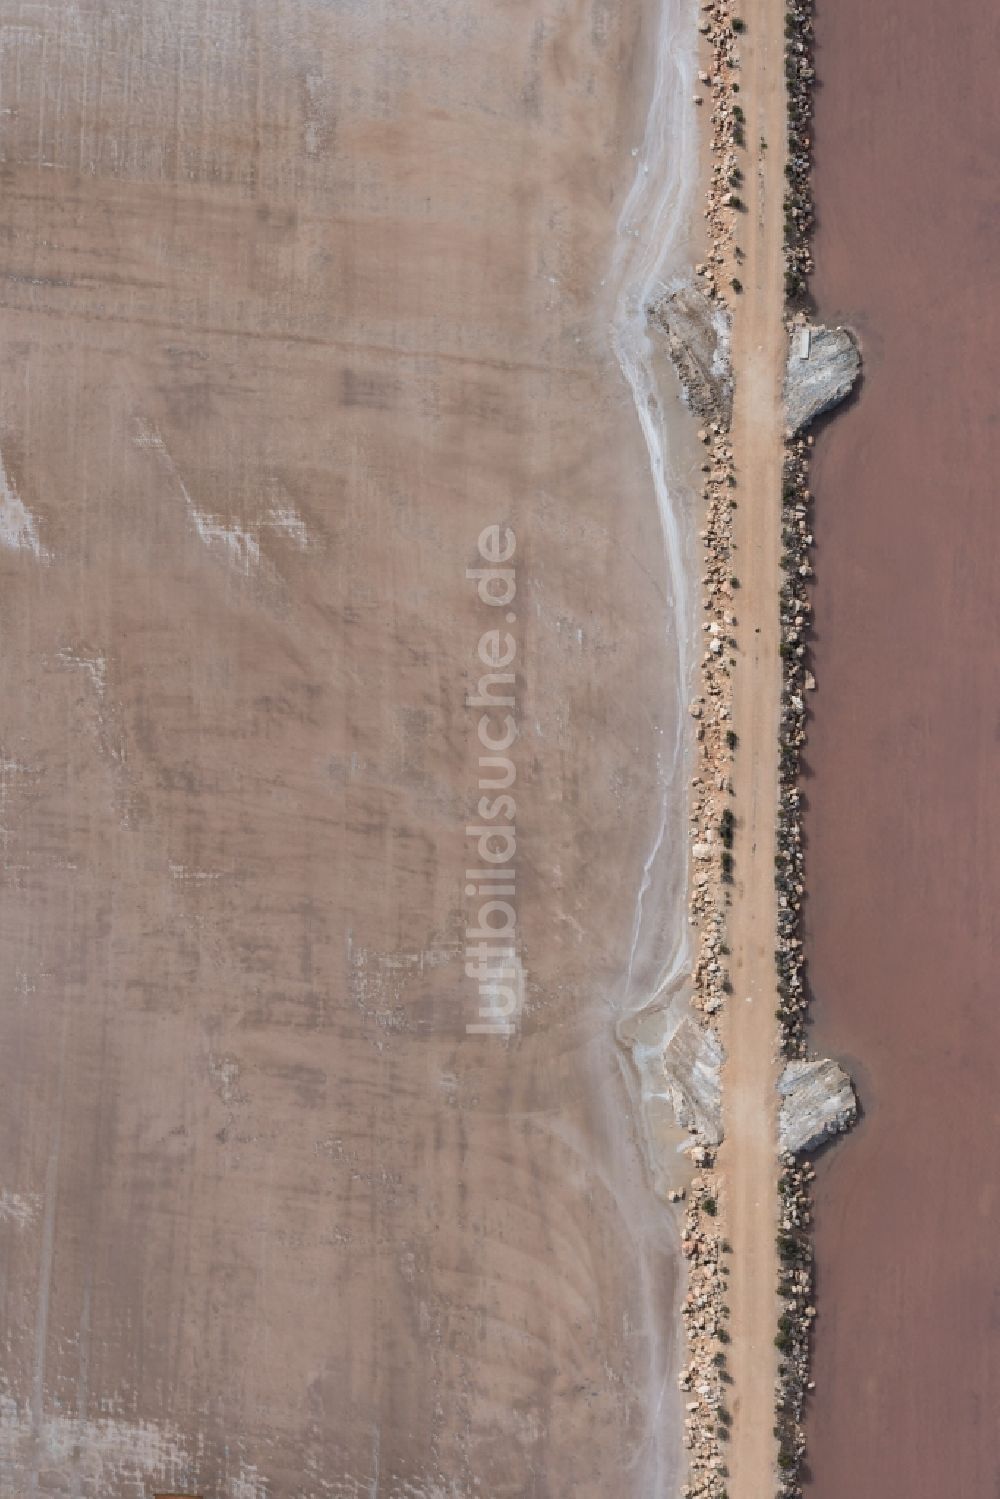 Luftbild Llucmajor - Salinen Felder zur Salzgewinnung in Llucmajor auf der balearischen Mittelmeerinsel Mallorca, Spanien